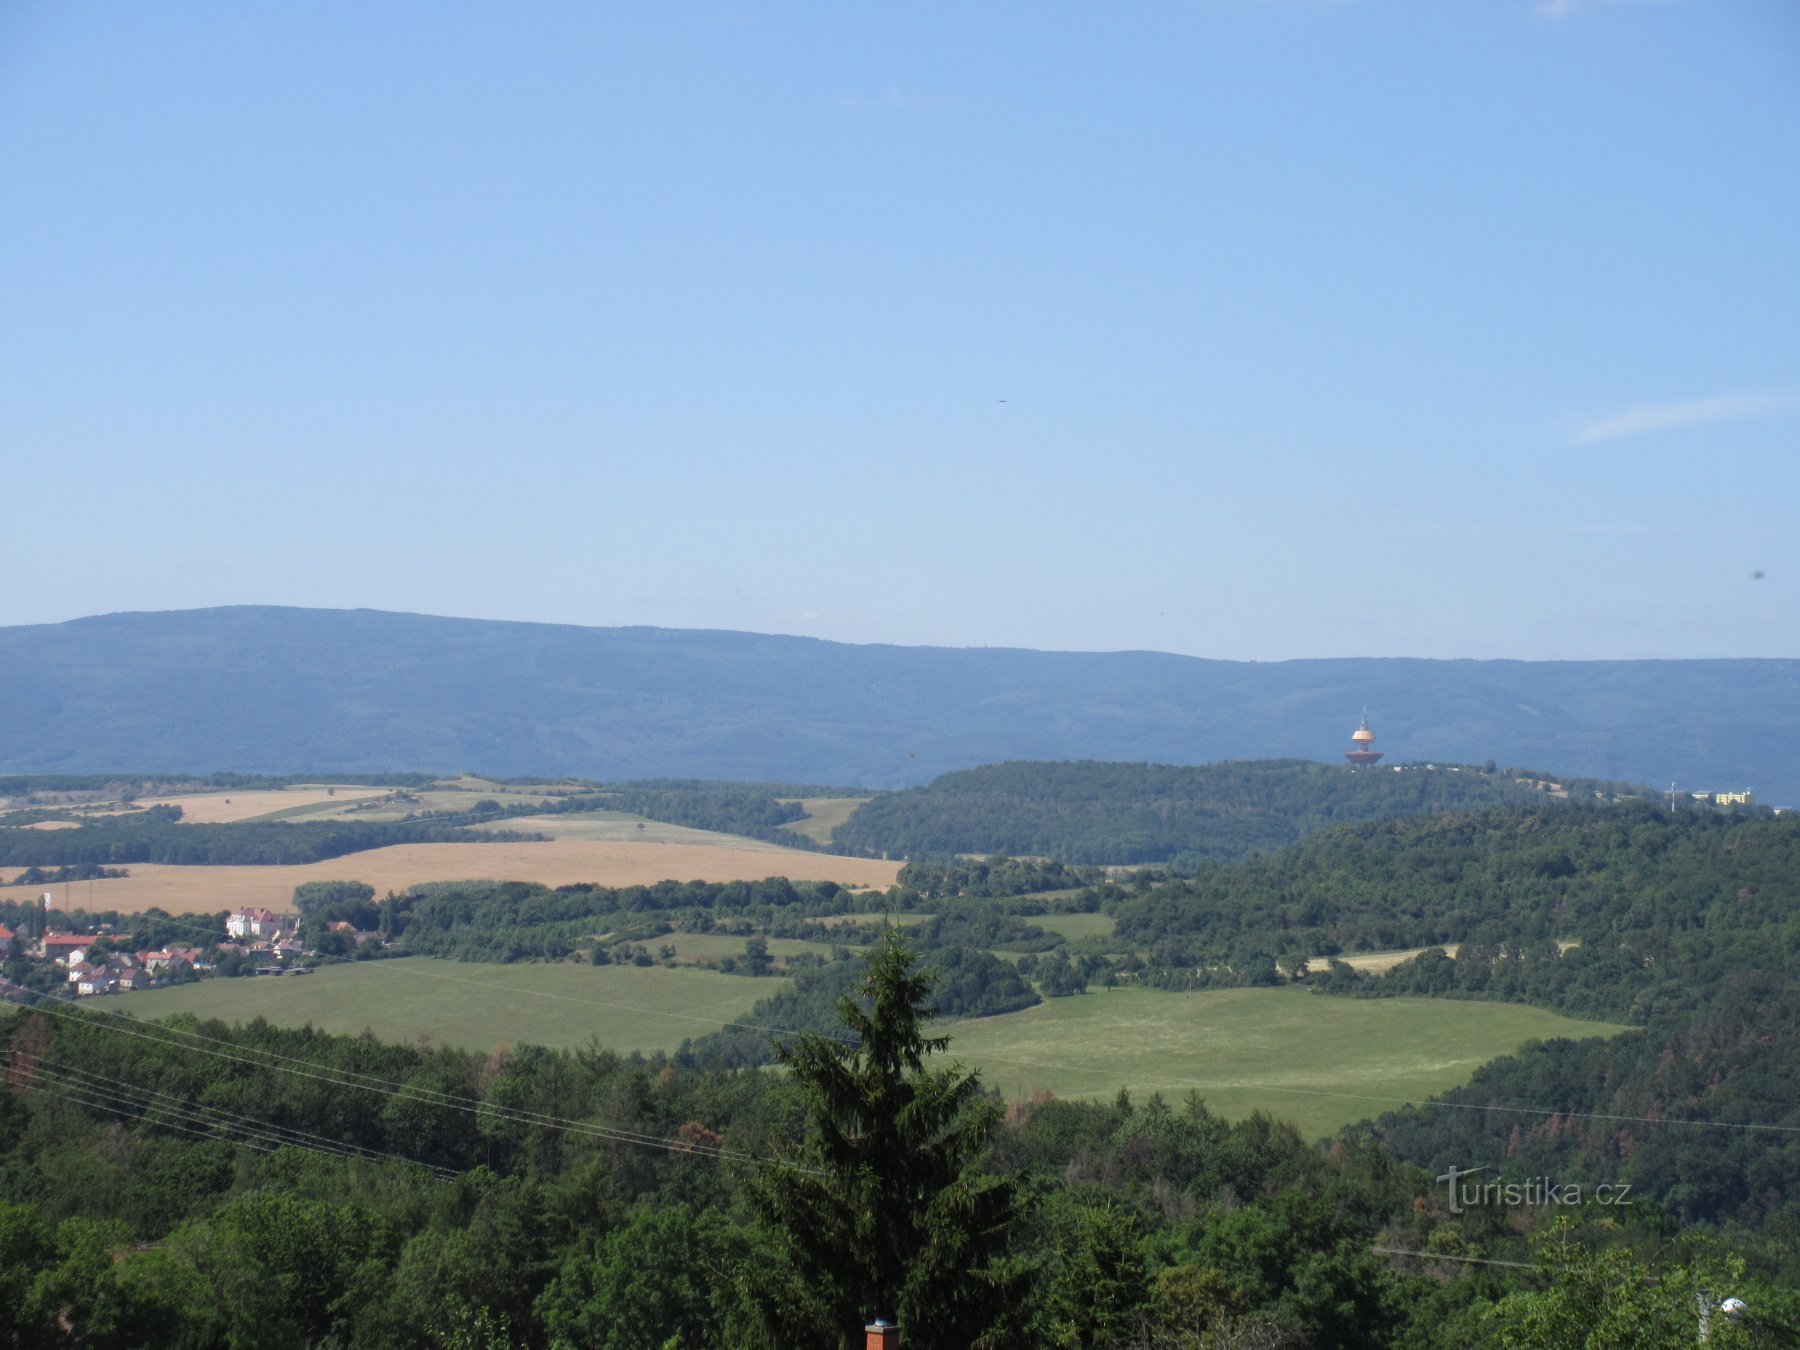 Svetec - phần còn lại của tháp quan sát bằng đá Aloisova hýzna